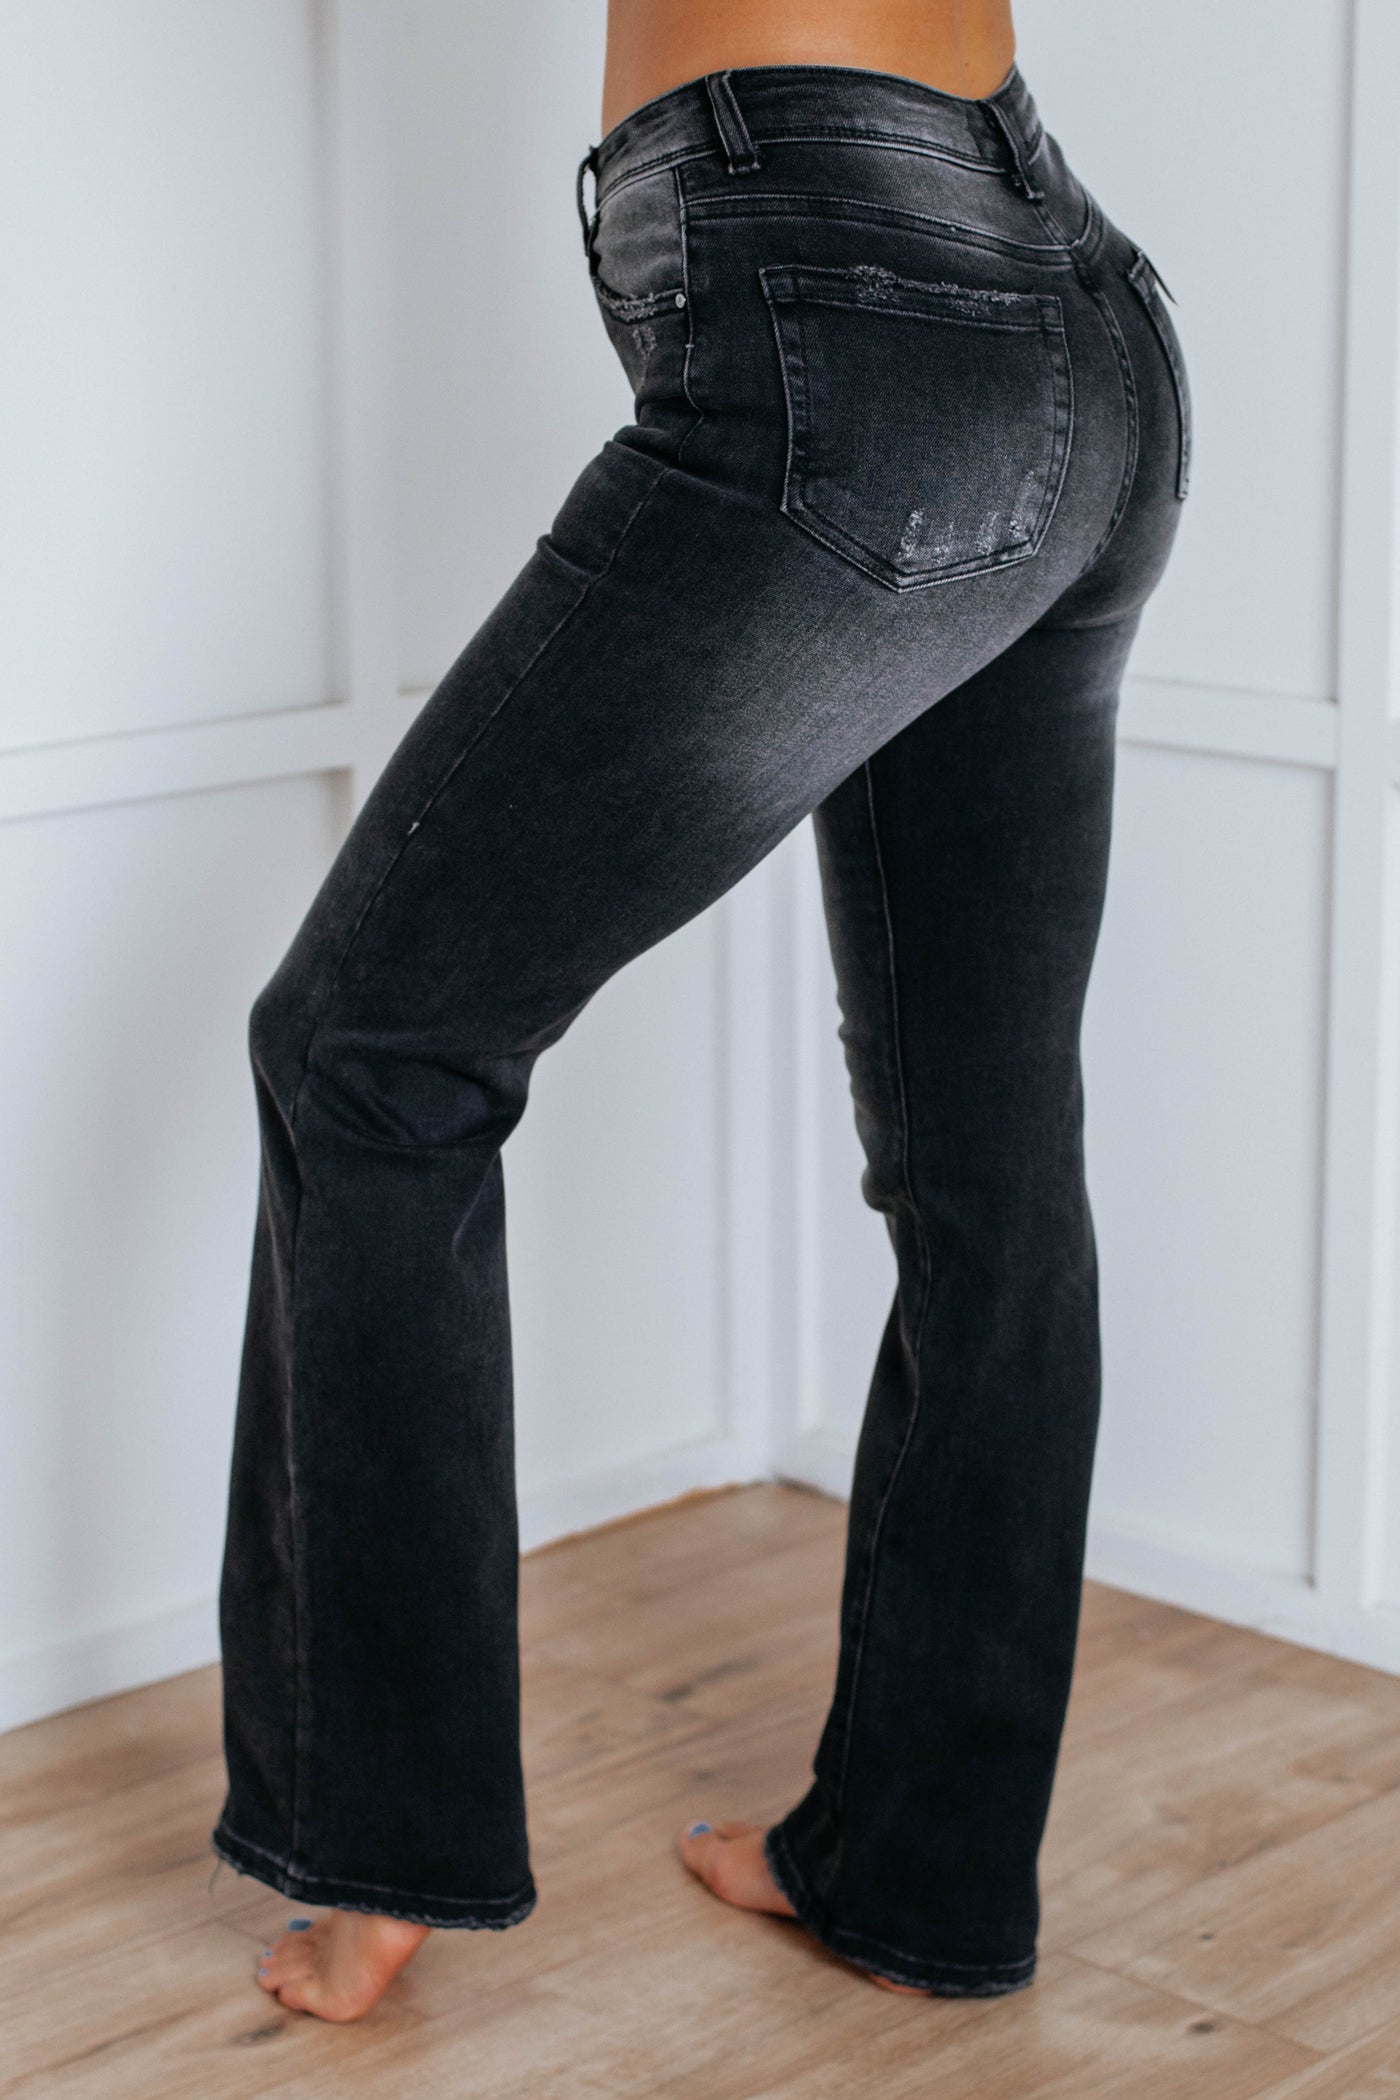 Asher Risen Jeans - Vintage Black